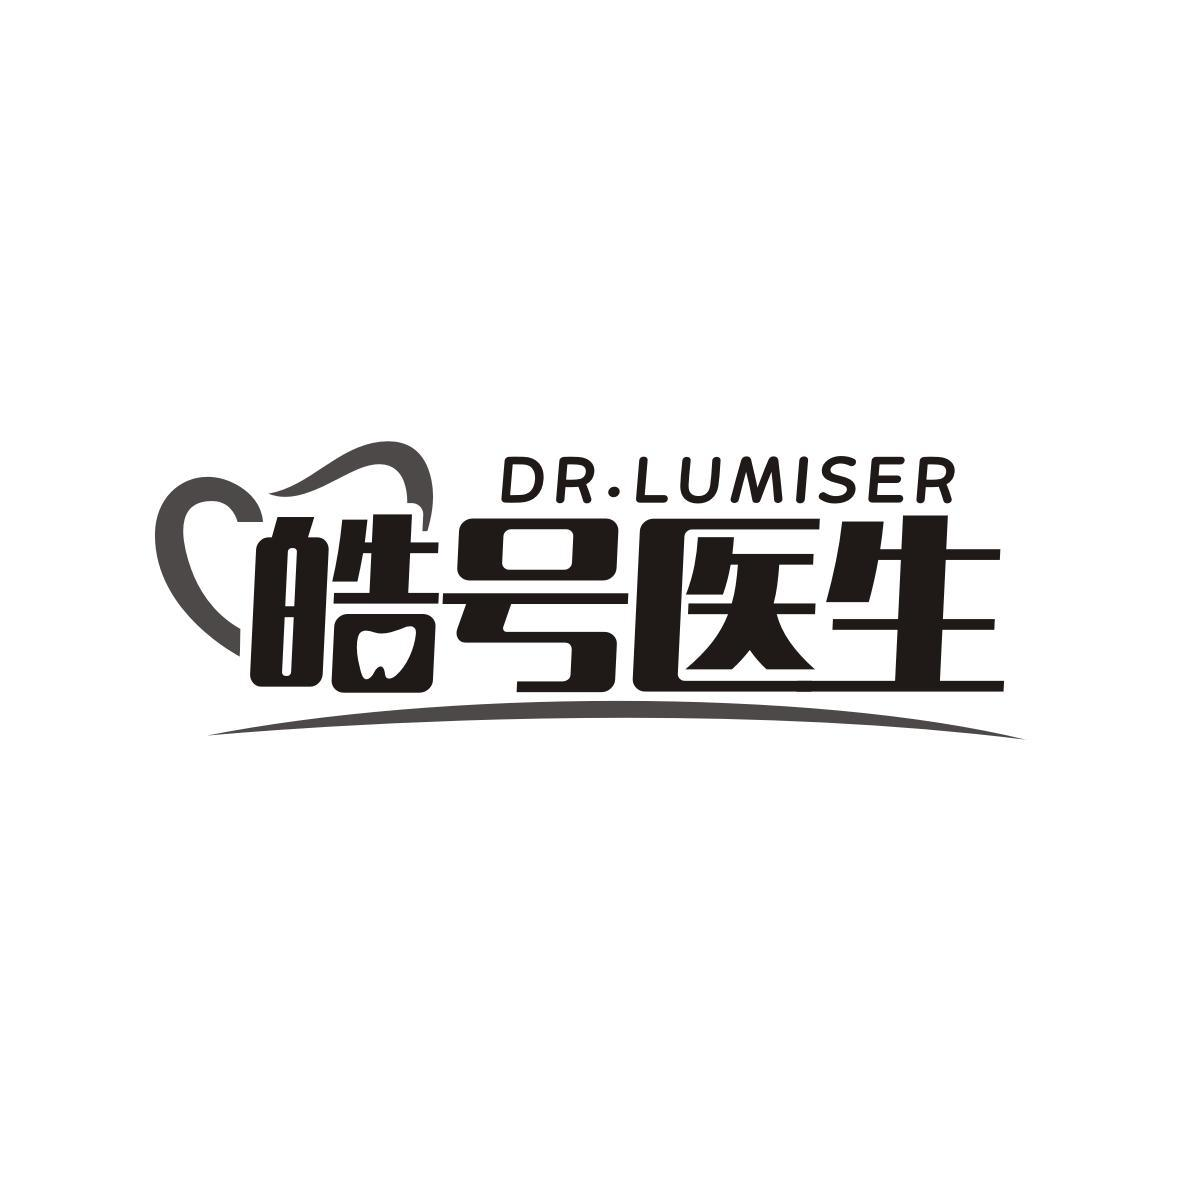 皓号医生 DR.LUMISER商标转让